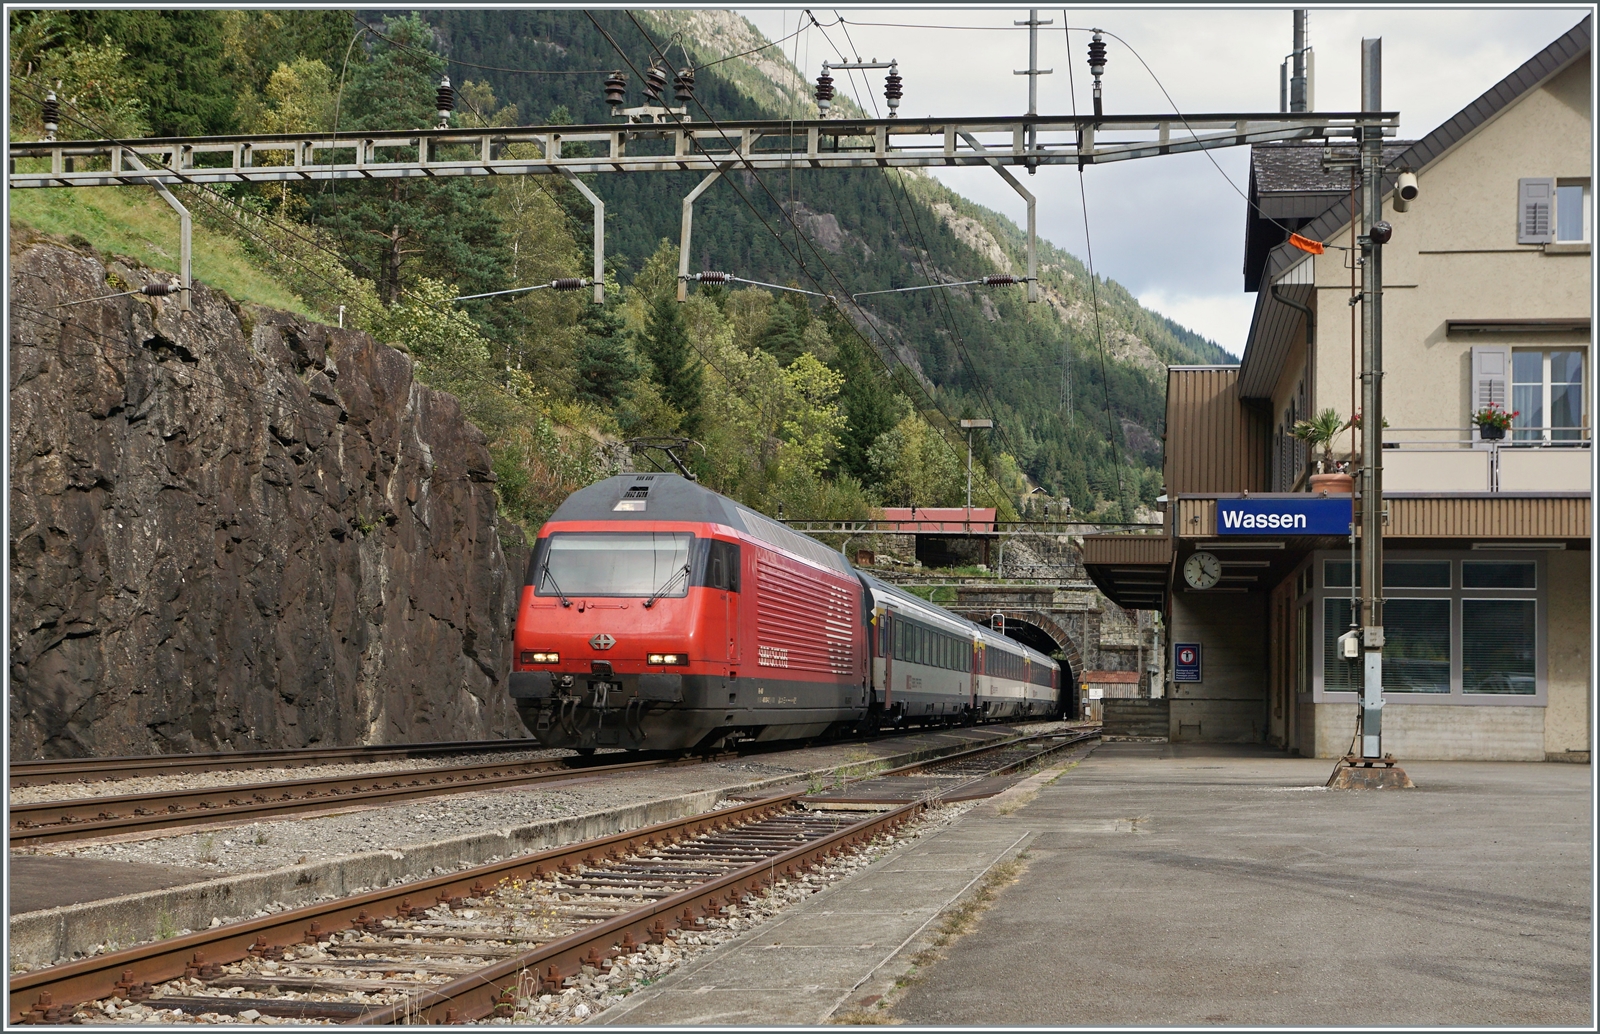 Die SBB Re 460 034 ist mit ihrem EC 10156 in Wassen auf dem Weg von Lugano nach Basel SBB. 

19. Oktober 2023